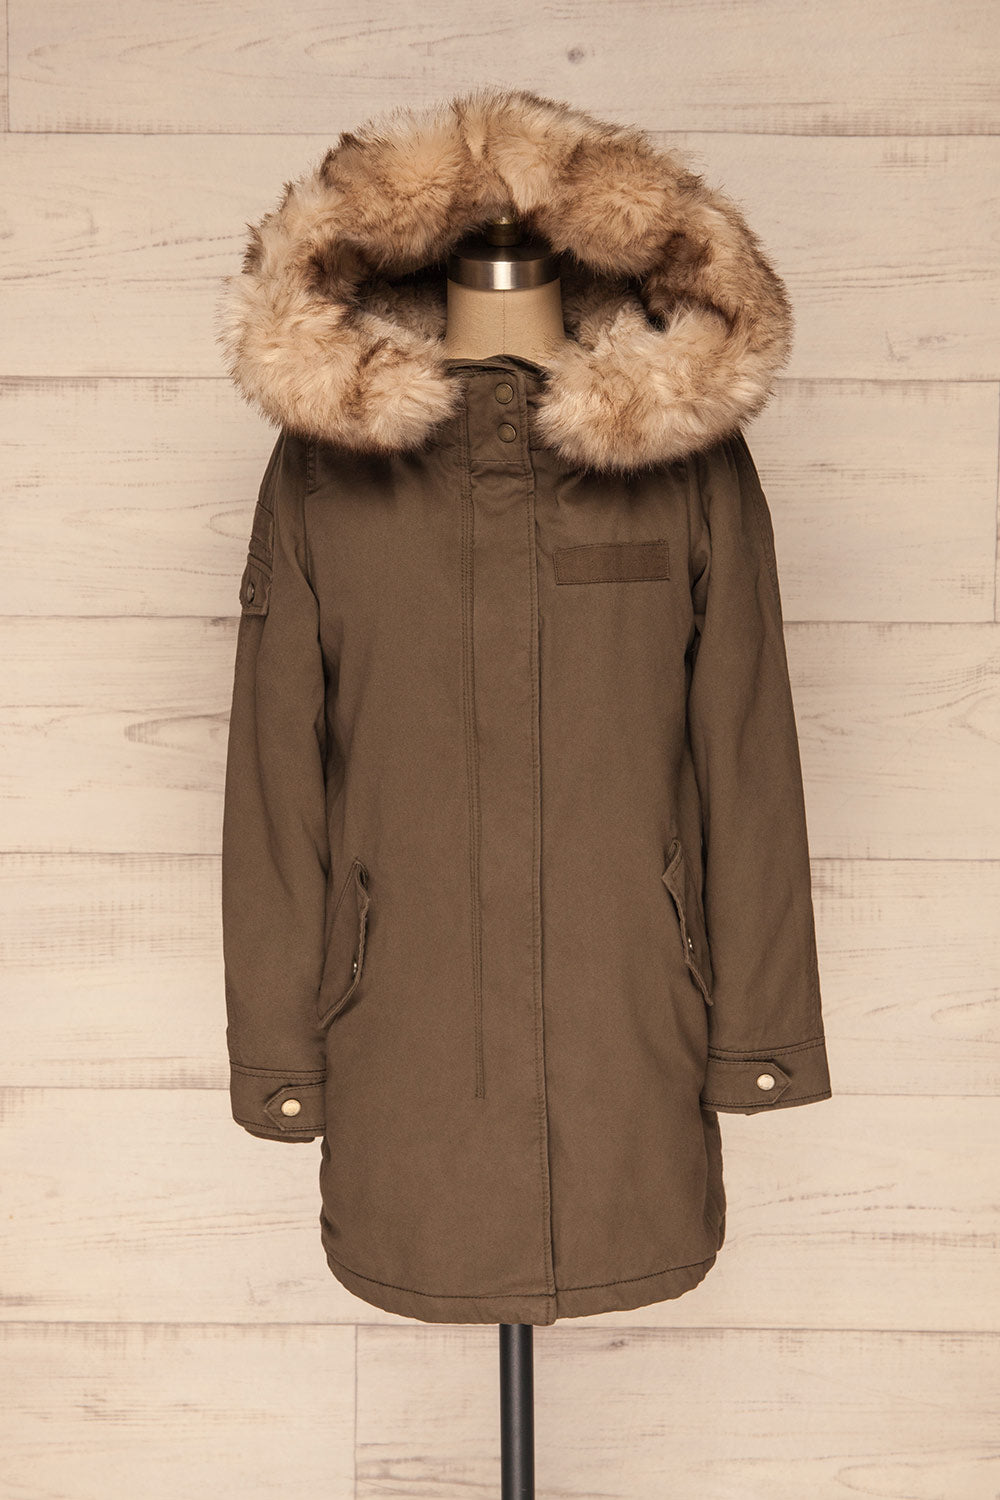 Varna Khaki Parka Coat with Faux Fur Hood | La Petite Garçonne front view hood